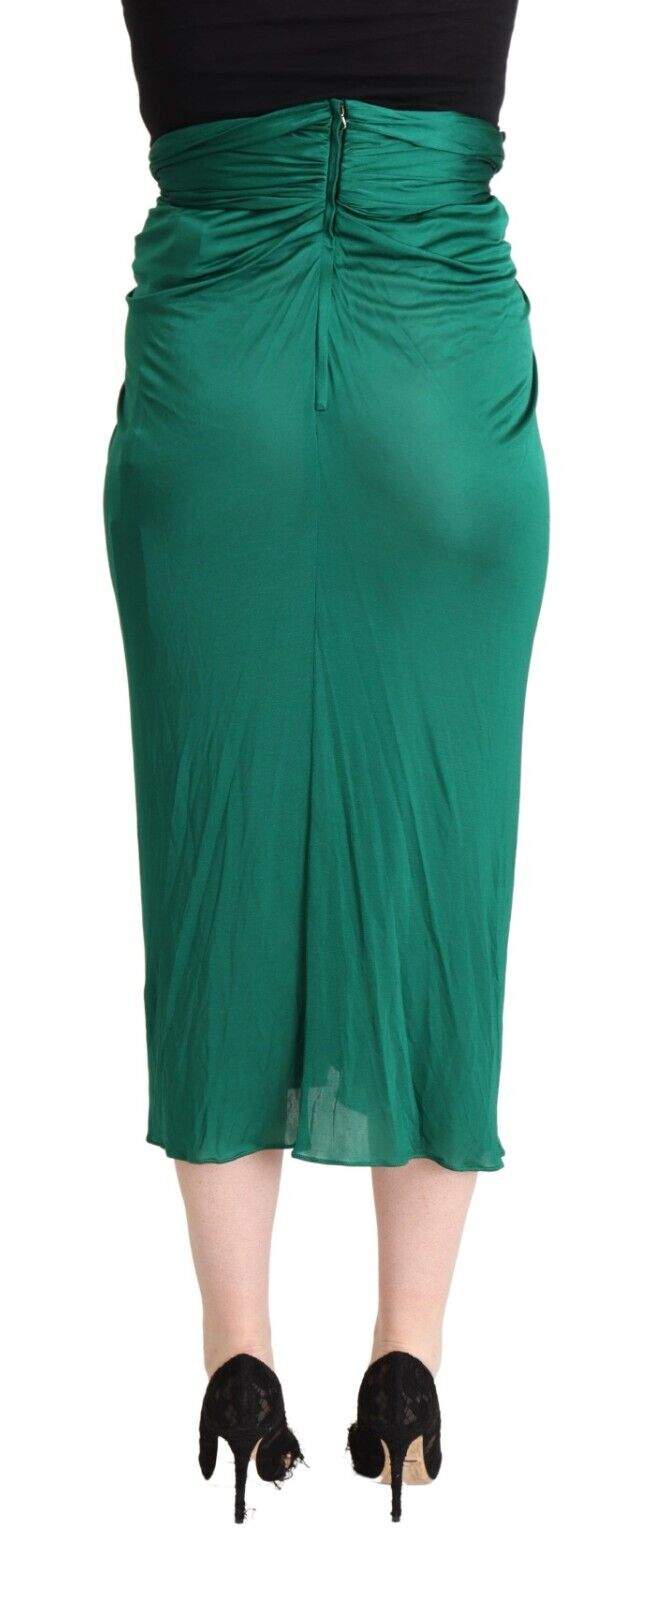 Dolce & Gabbana Dark Green High Waist Midi Pencil Cut Pleated Skirt Dolce & Gabbana, feed-1, Green, IT36|XXS, IT38|XS, IT40|S, IT42|M, IT44|L, IT46|XL, IT48|XXL, Skirts - Women - Clothing at SEYMAYKA